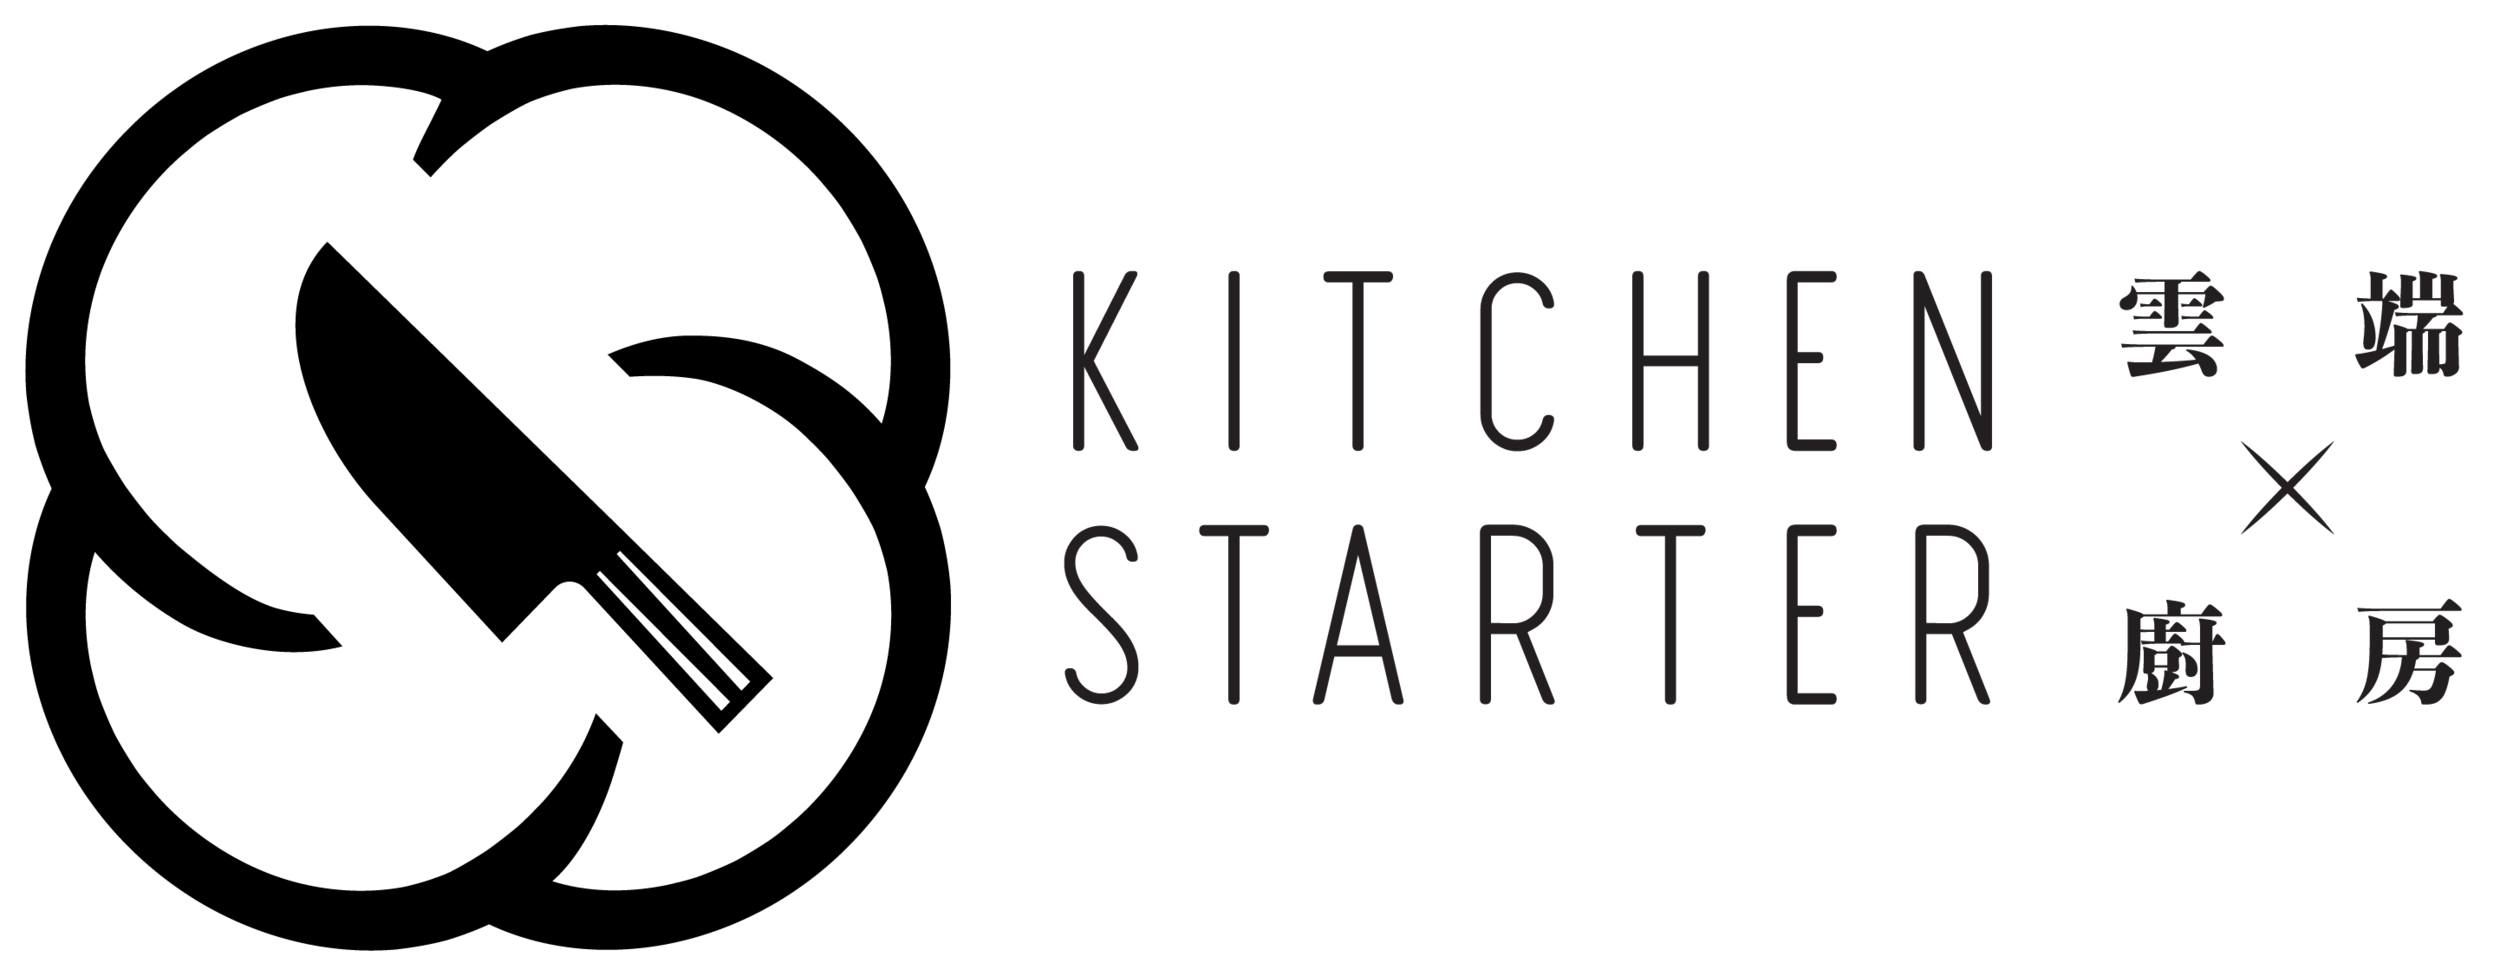 Kitchen Starter